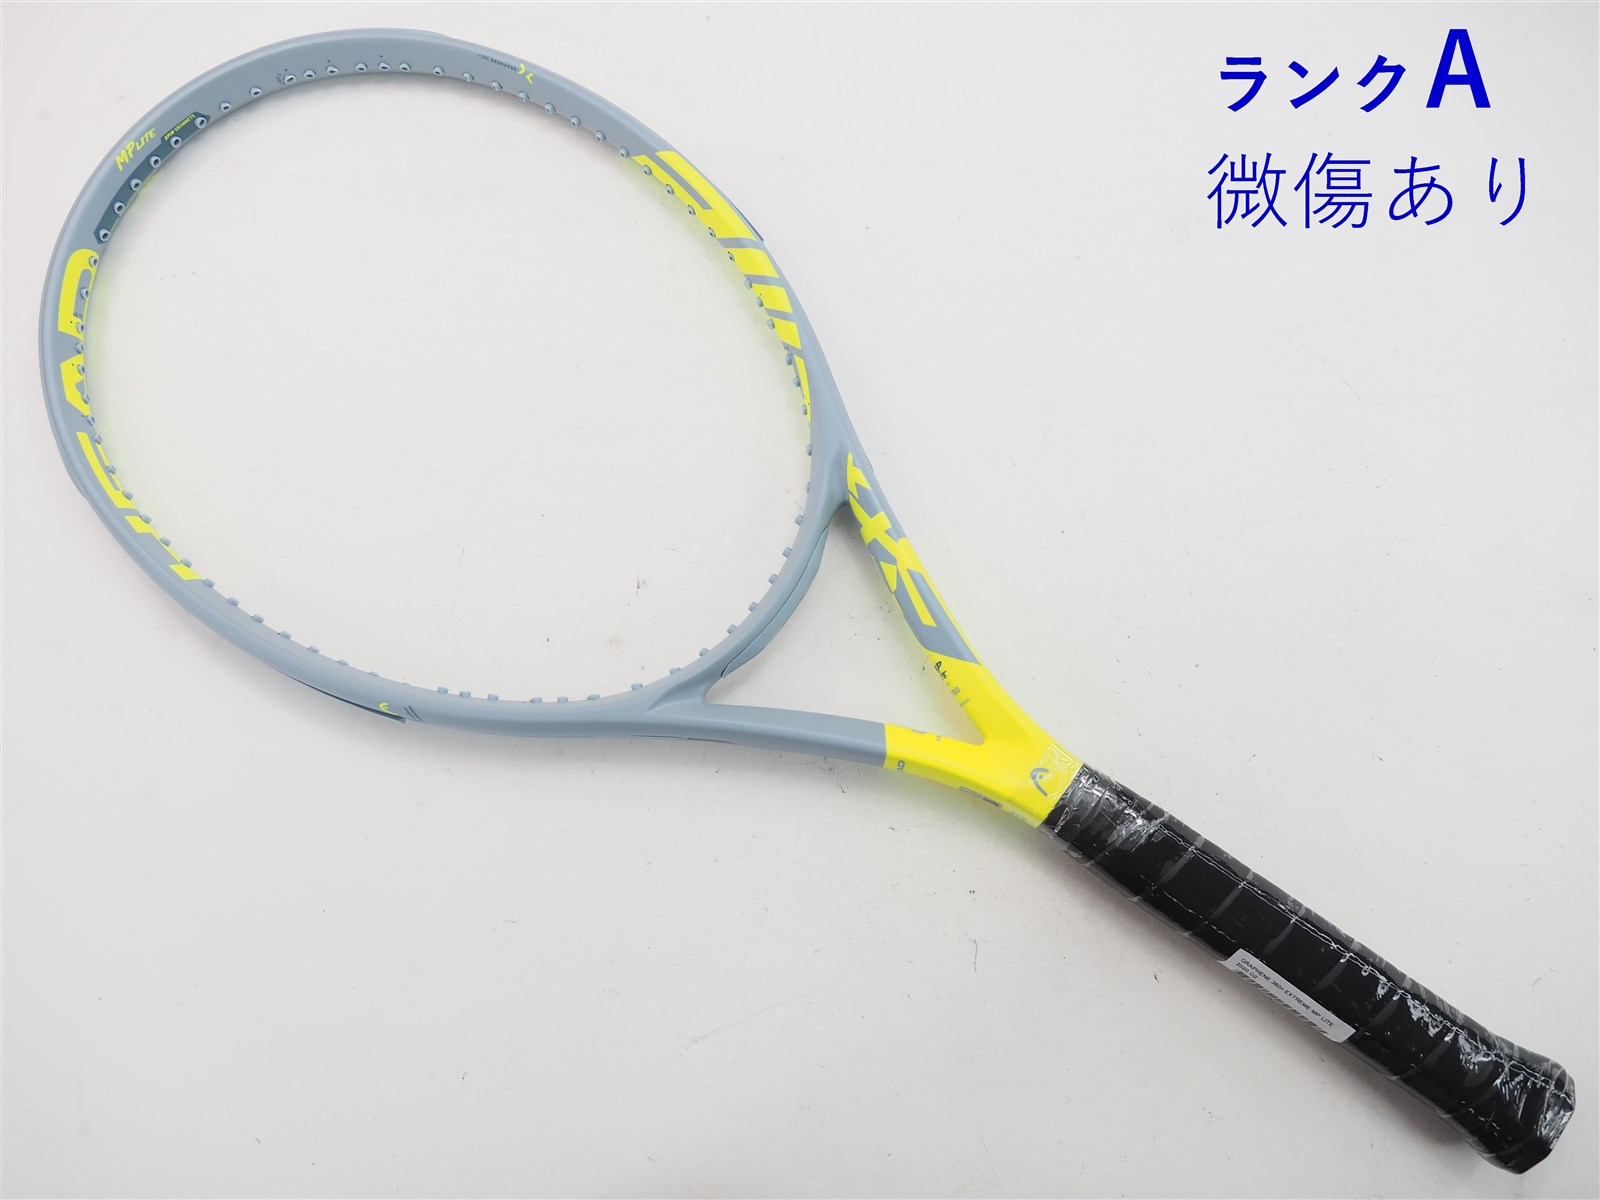 HEAD ヘッド テニスラケット SPEED MP 2020モデル G2 - ラケット(硬式用)